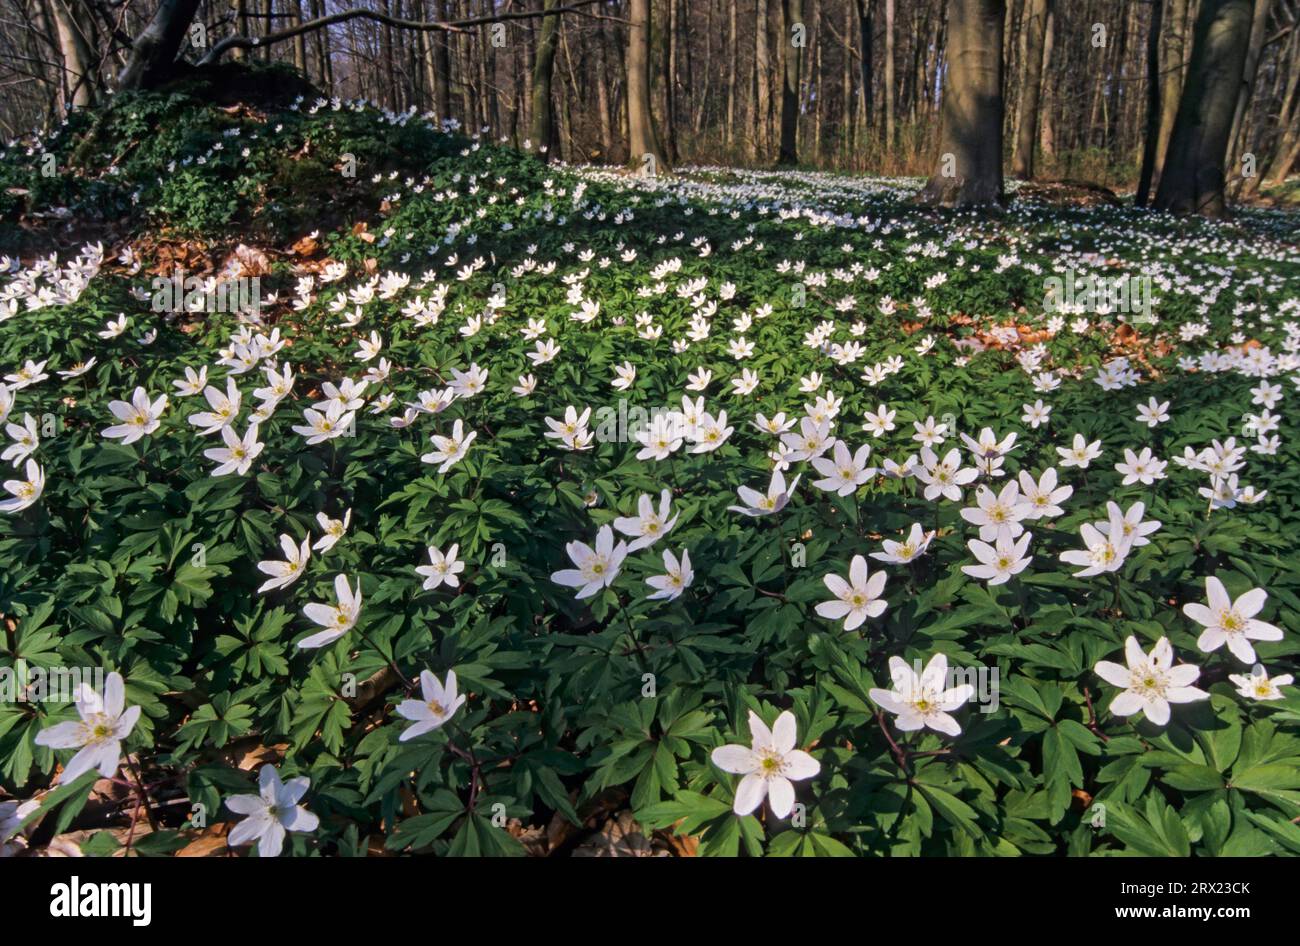 L'anémone des bois (Anemone nemorosa) forme parfois de grands tapis fleuris dans les forêts feuillues de feuillus (Hexenbluemchen), l'anémone des bois est un début de printemps Banque D'Images